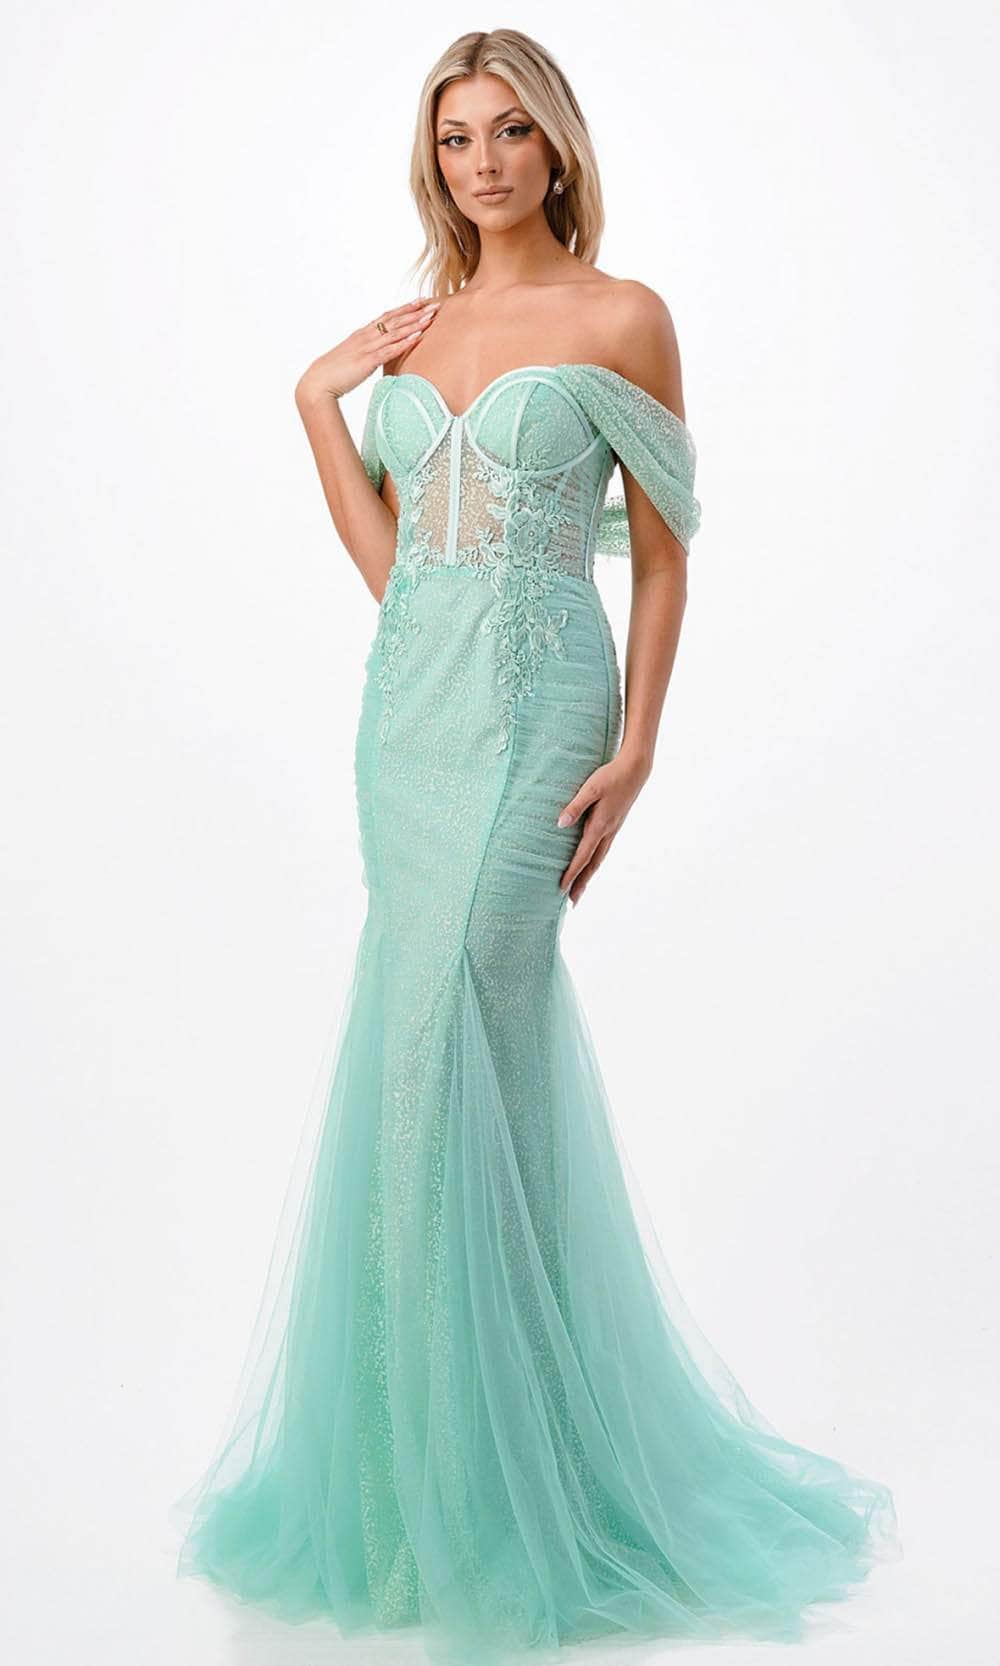 Aspeed Design P2100 - Off Shoulder Bustier Prom Dress
